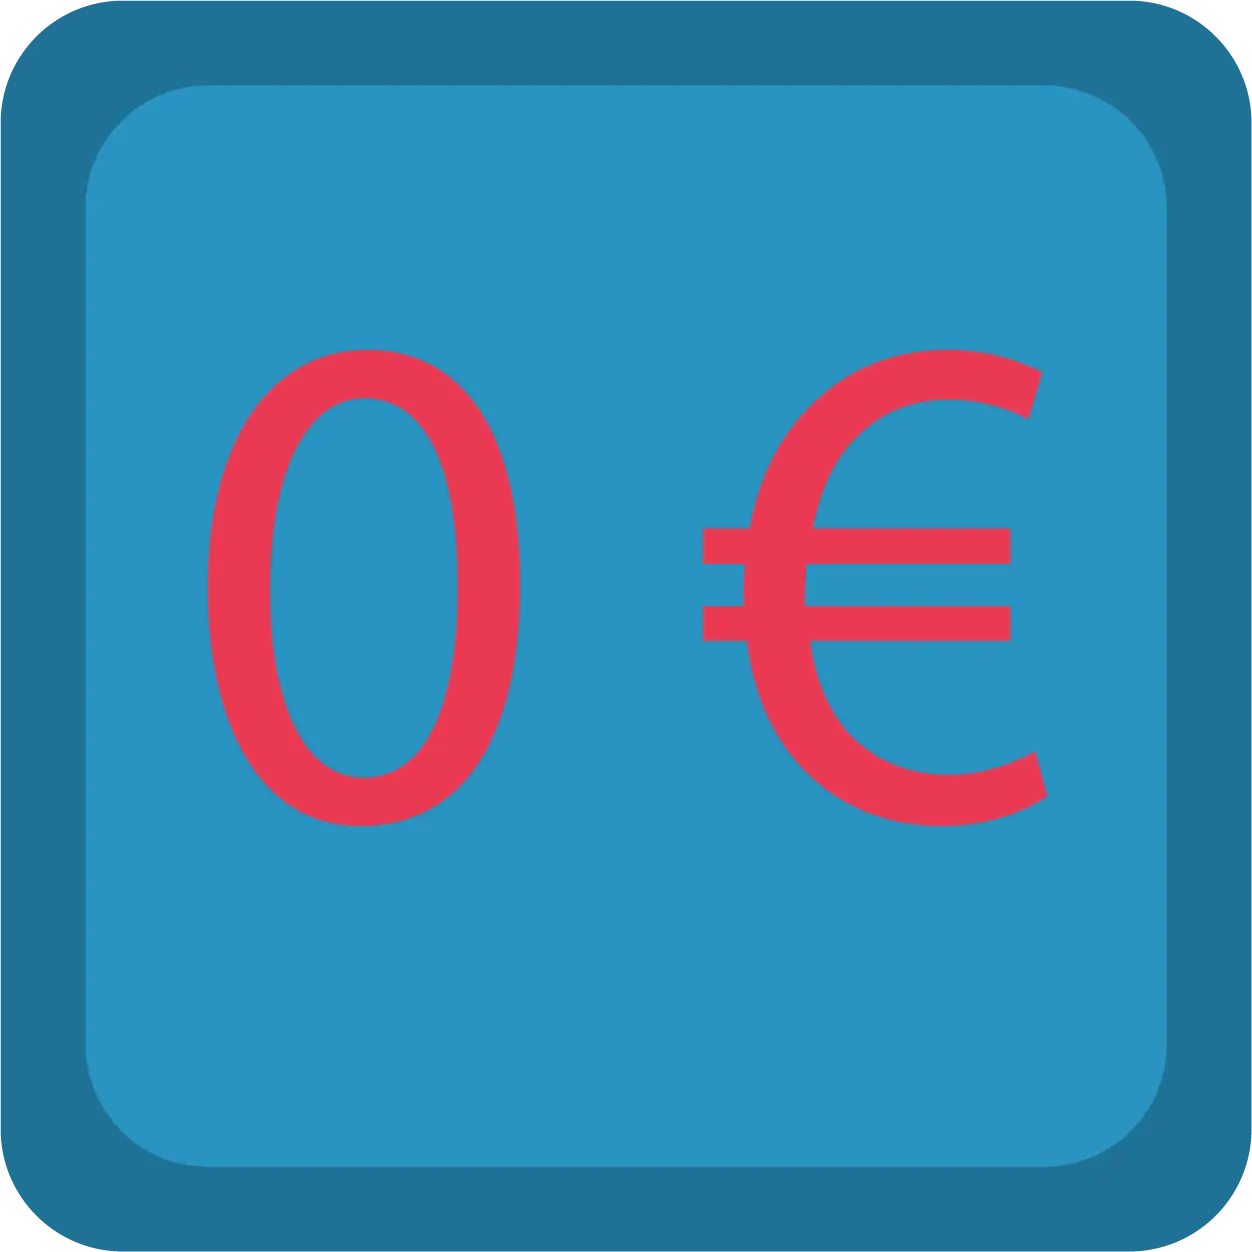 0 Euro in Rot auf blauem Hintergrund